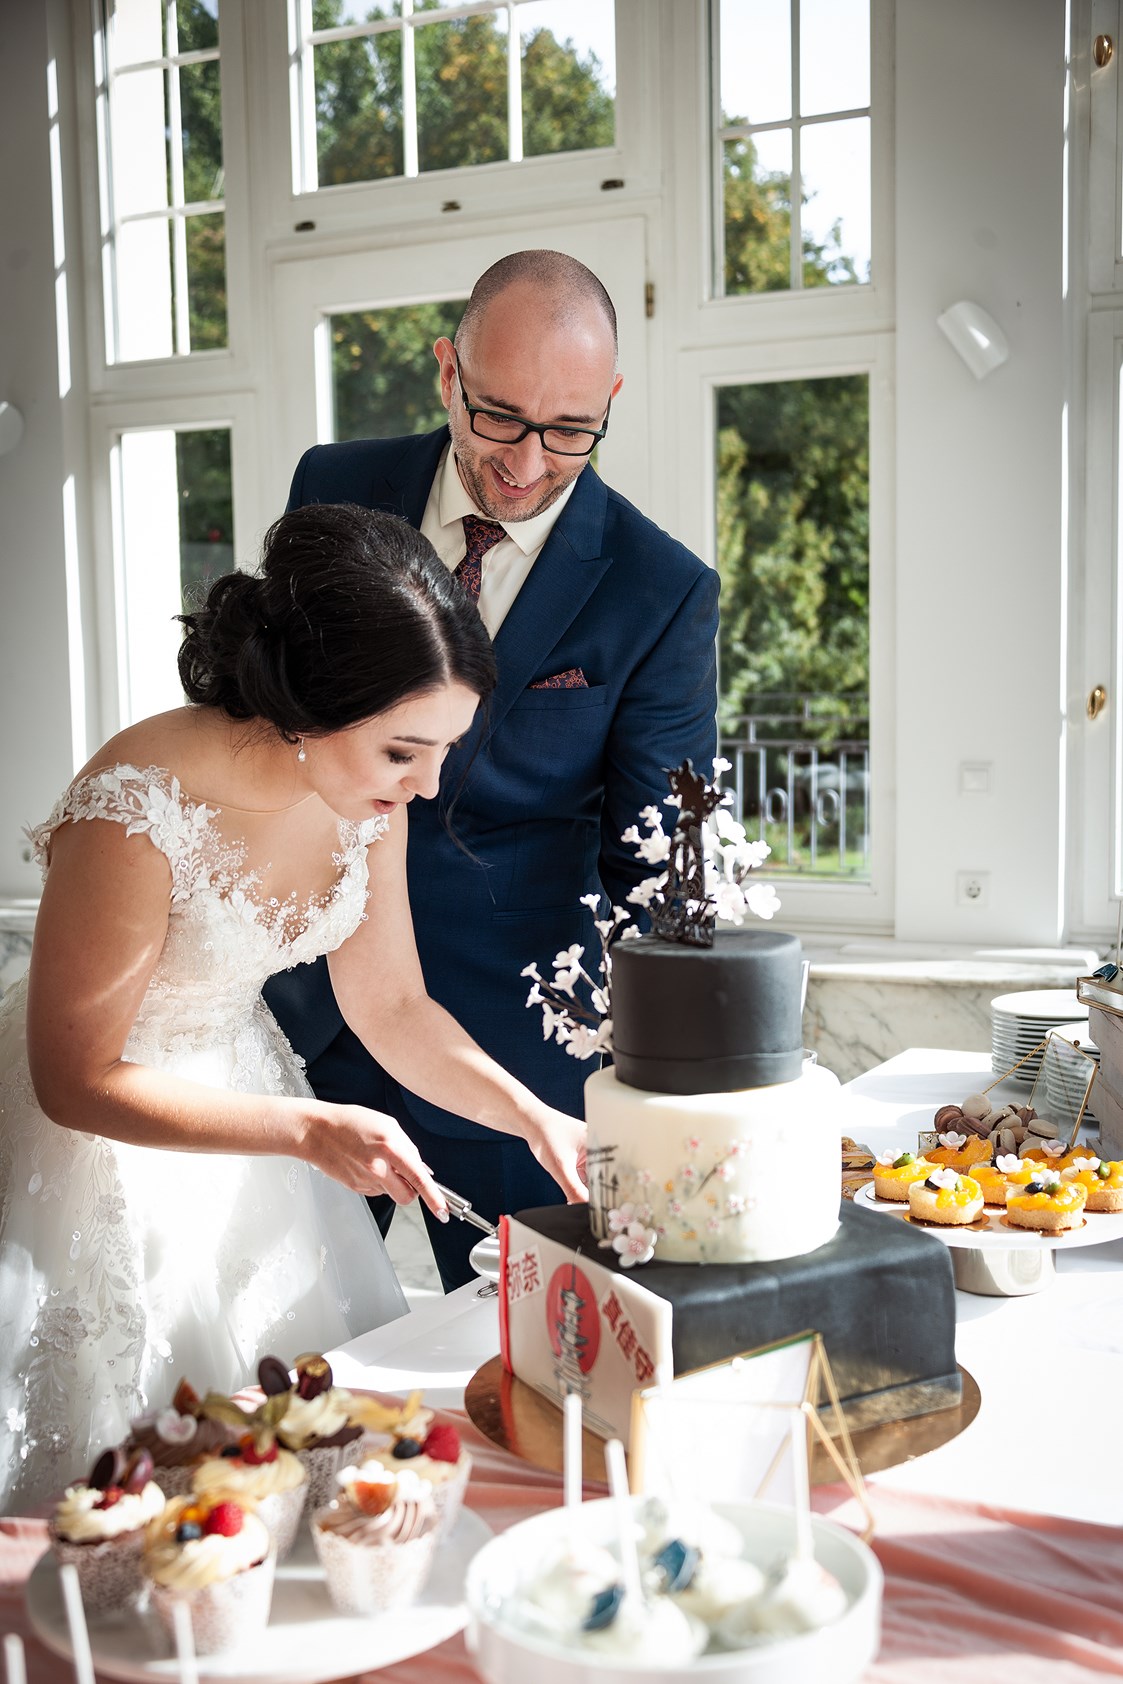 Hochzeitsfotograf: Anschneiden der Hochzeitstorte  - Zerina Kaps Photography 